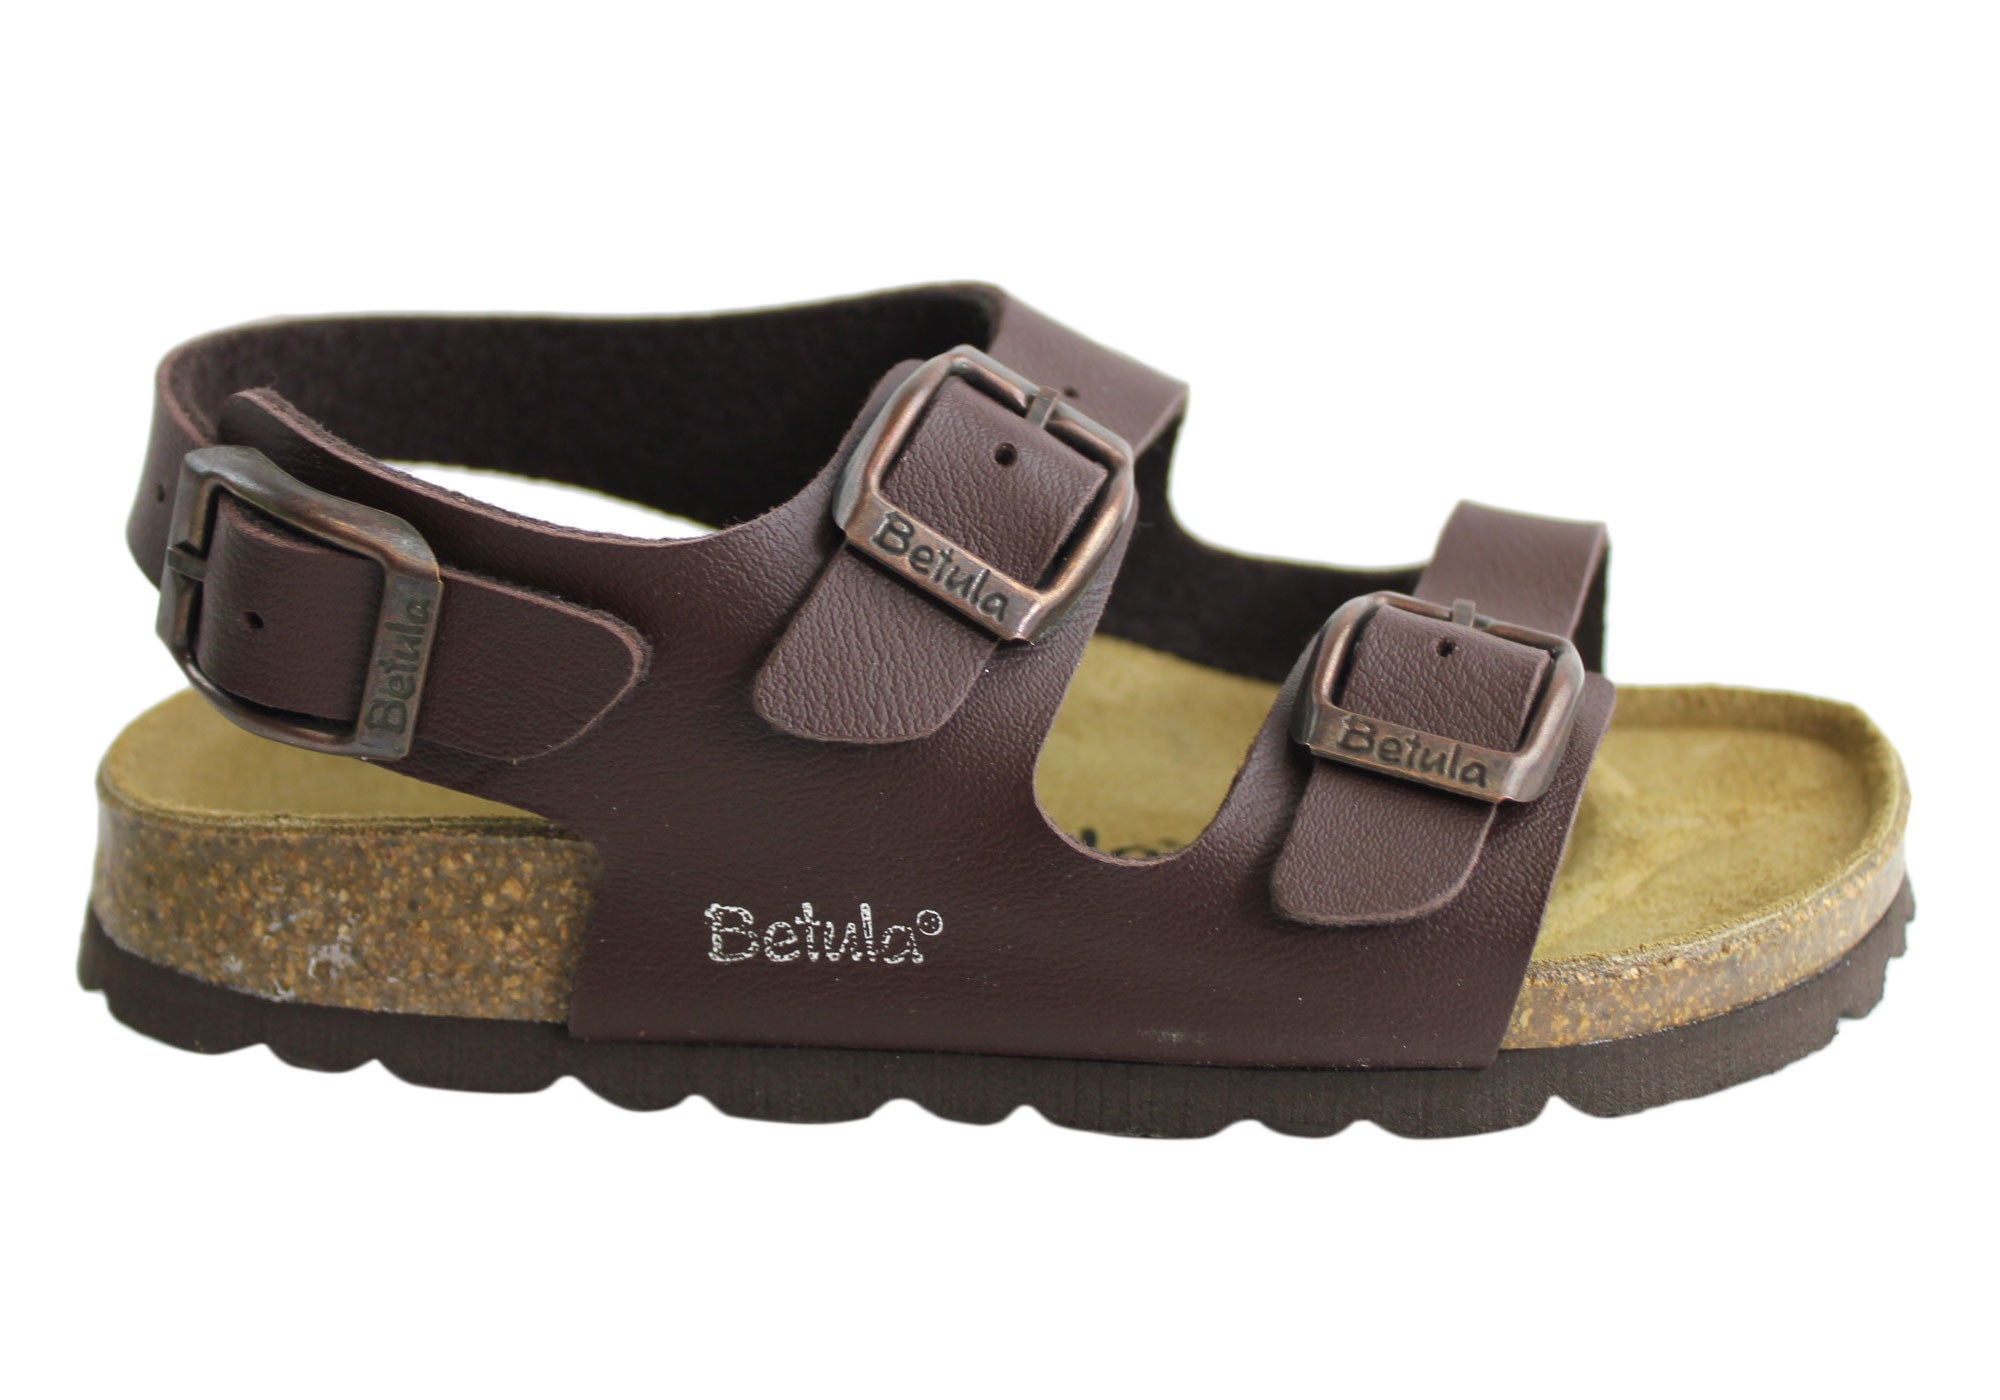 betula footwear